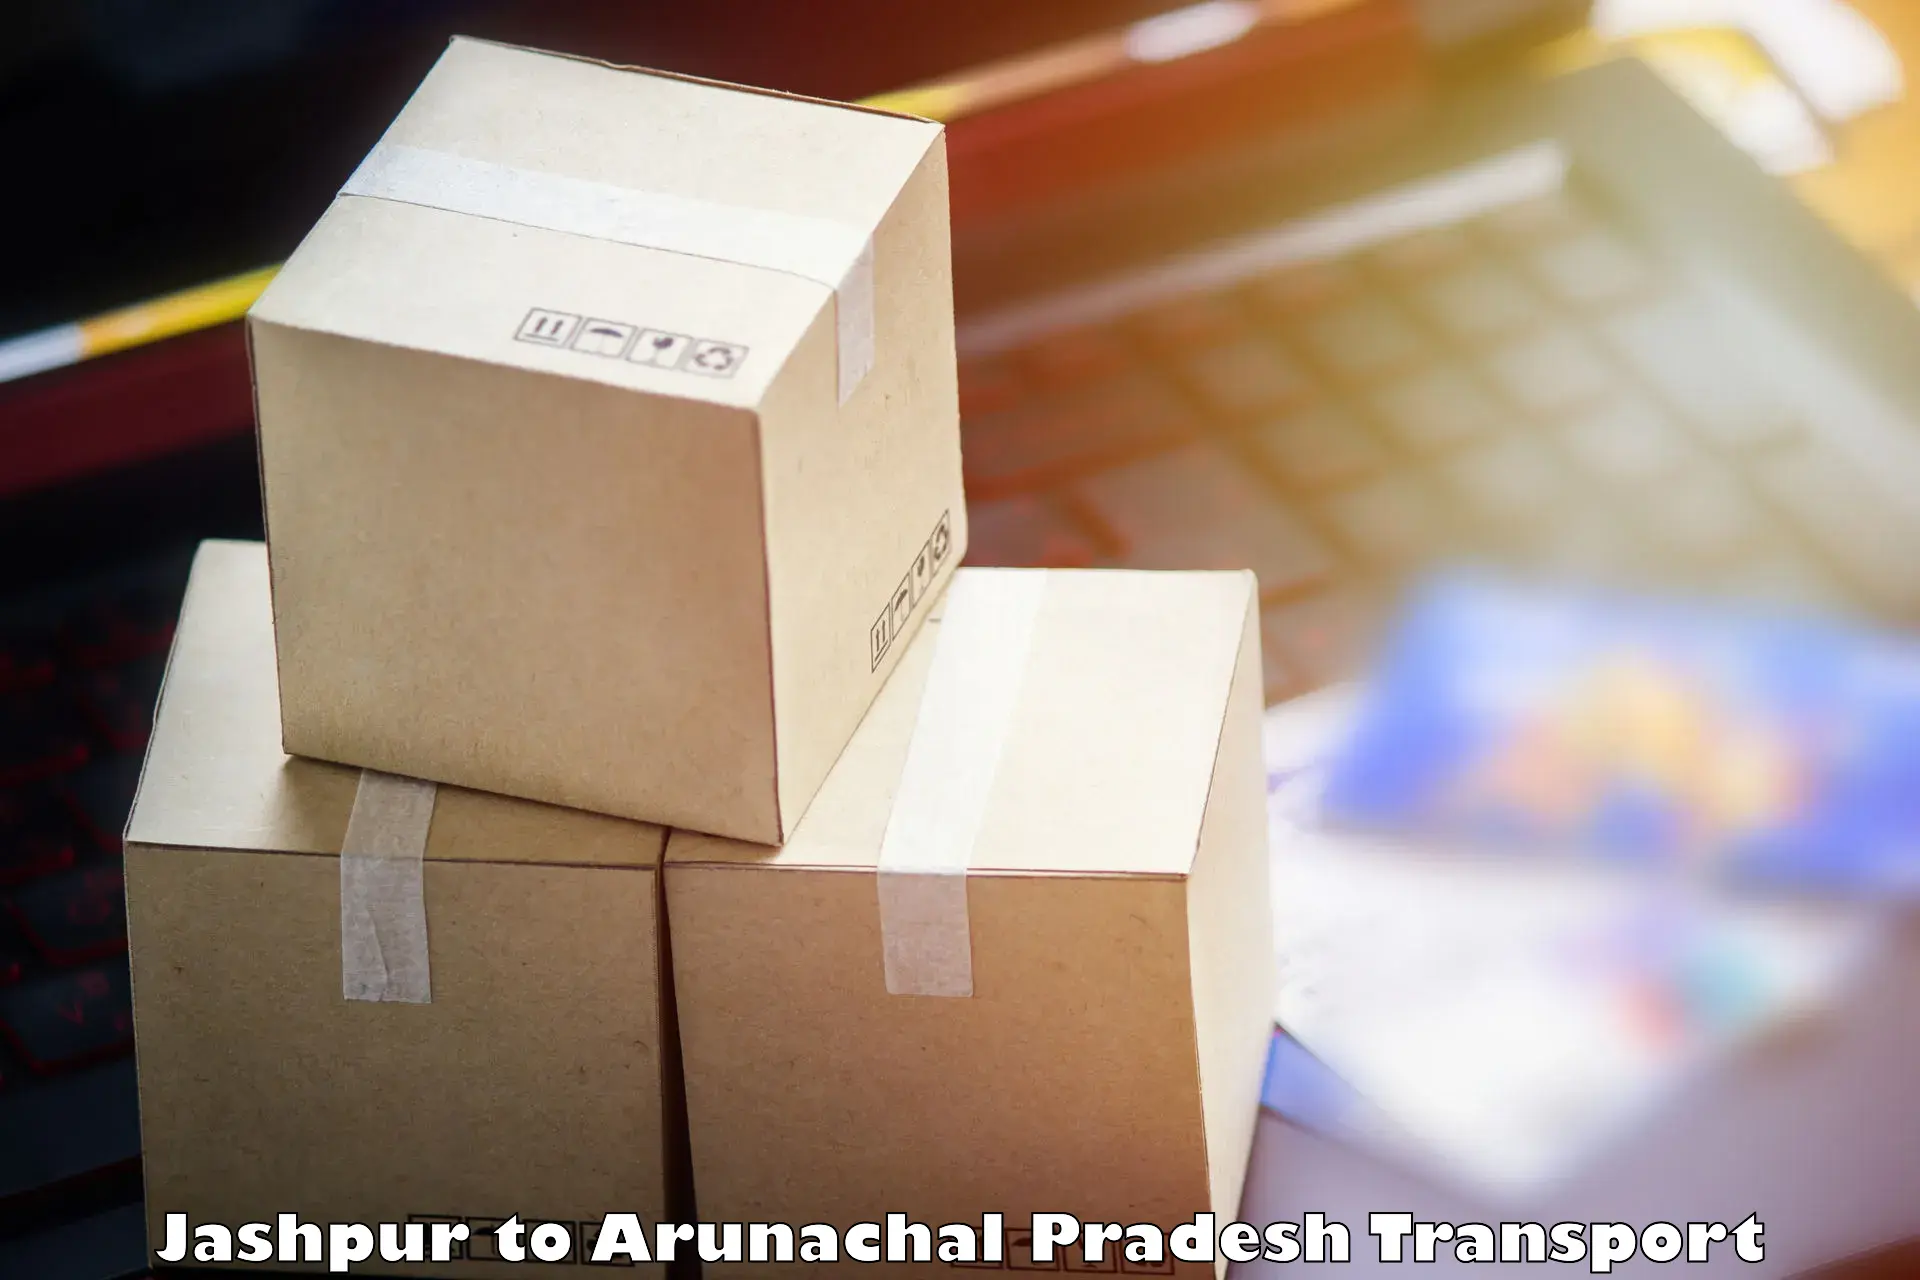 Shipping partner Jashpur to Arunachal Pradesh